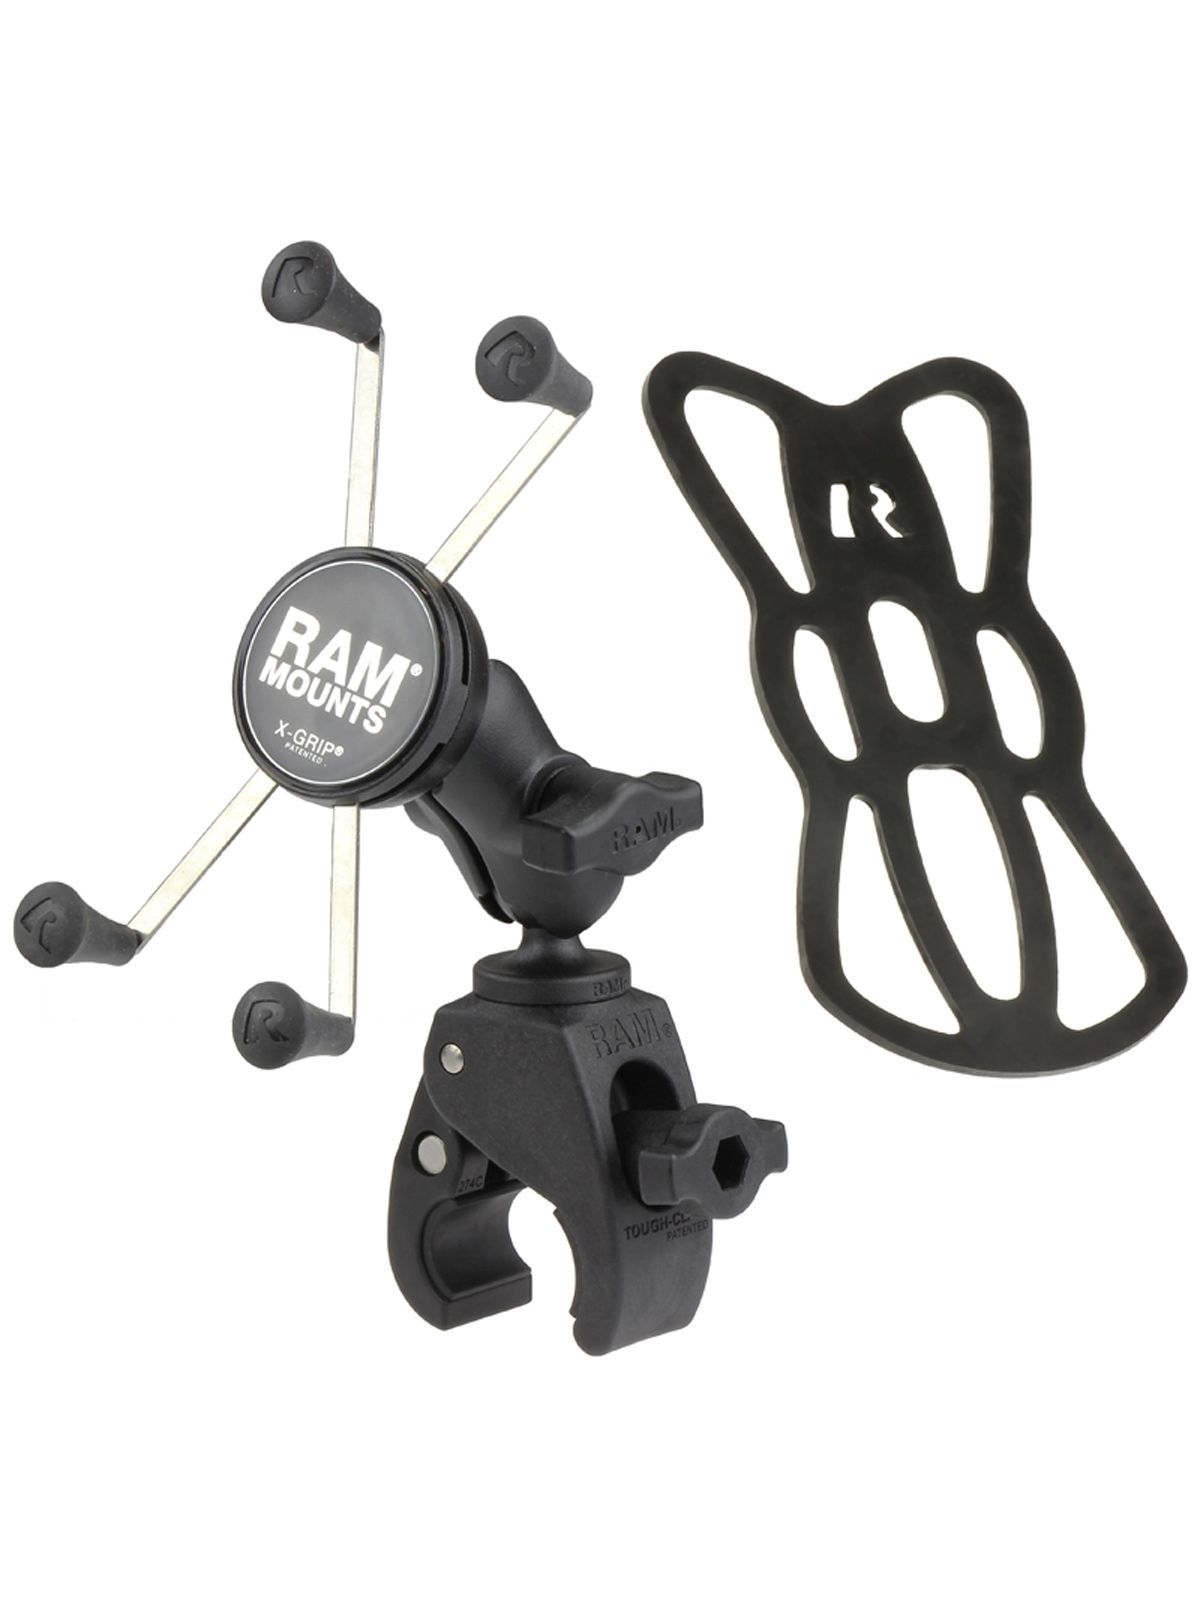 RAM Mounts X-Grip Klemm-Halterung für Smartphones bis 114,3 mm Breite - B-Kugel (1 Zoll), kleine Tough-Claw, kurzer Verbindungsarm